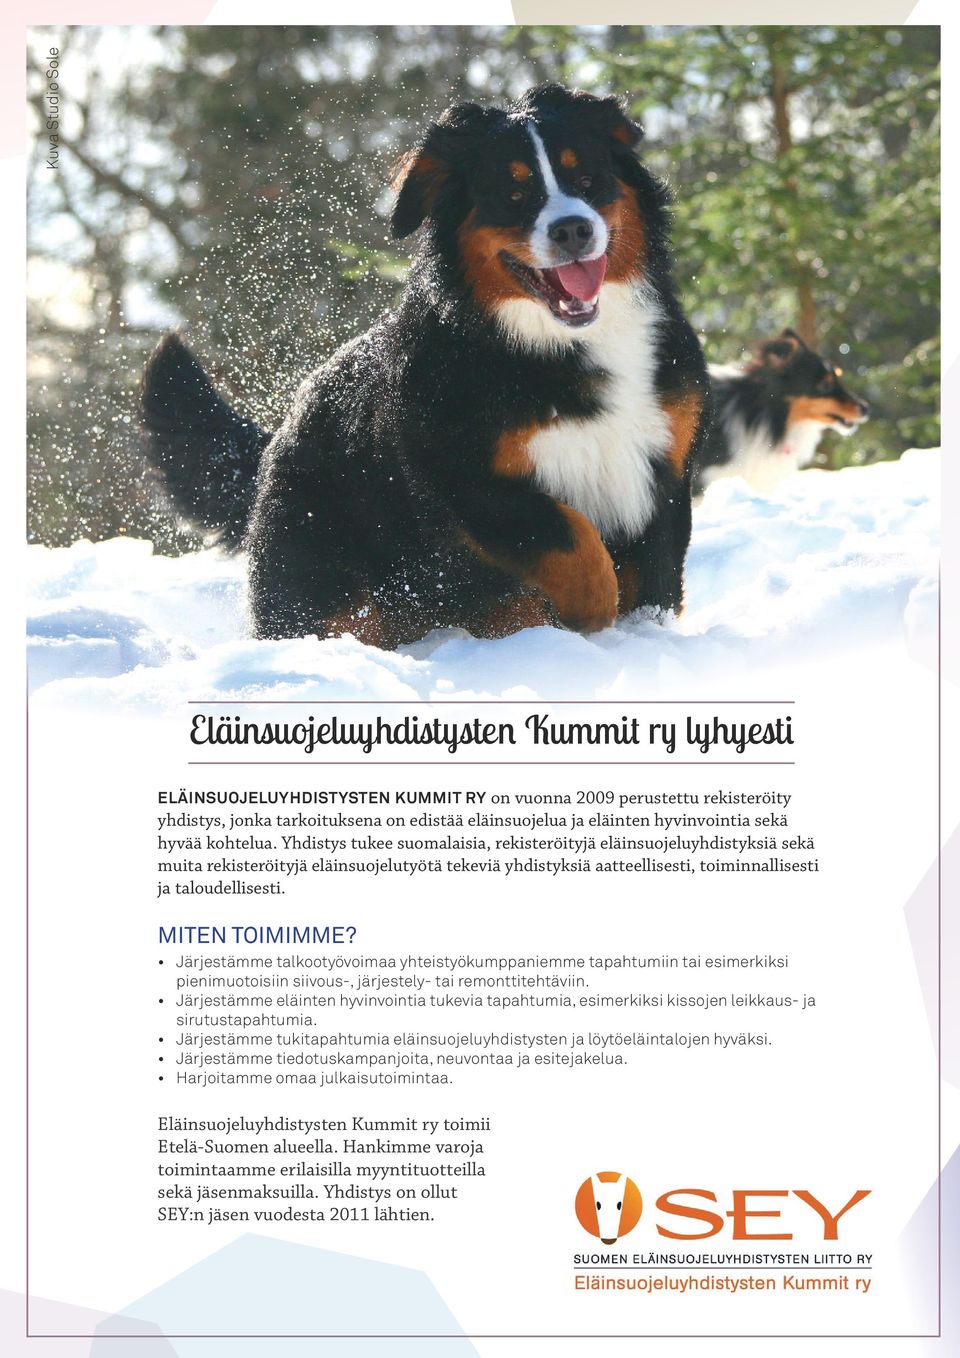 Yhdistys tukee suomalaisia, rekisteröityjä eläinsuojeluyhdistyksiä sekä muita rekisteröityjä eläinsuojelutyötä tekeviä yhdistyksiä aatteellisesti, toiminnallisesti ja taloudellisesti. MITEN TOIMIMME?